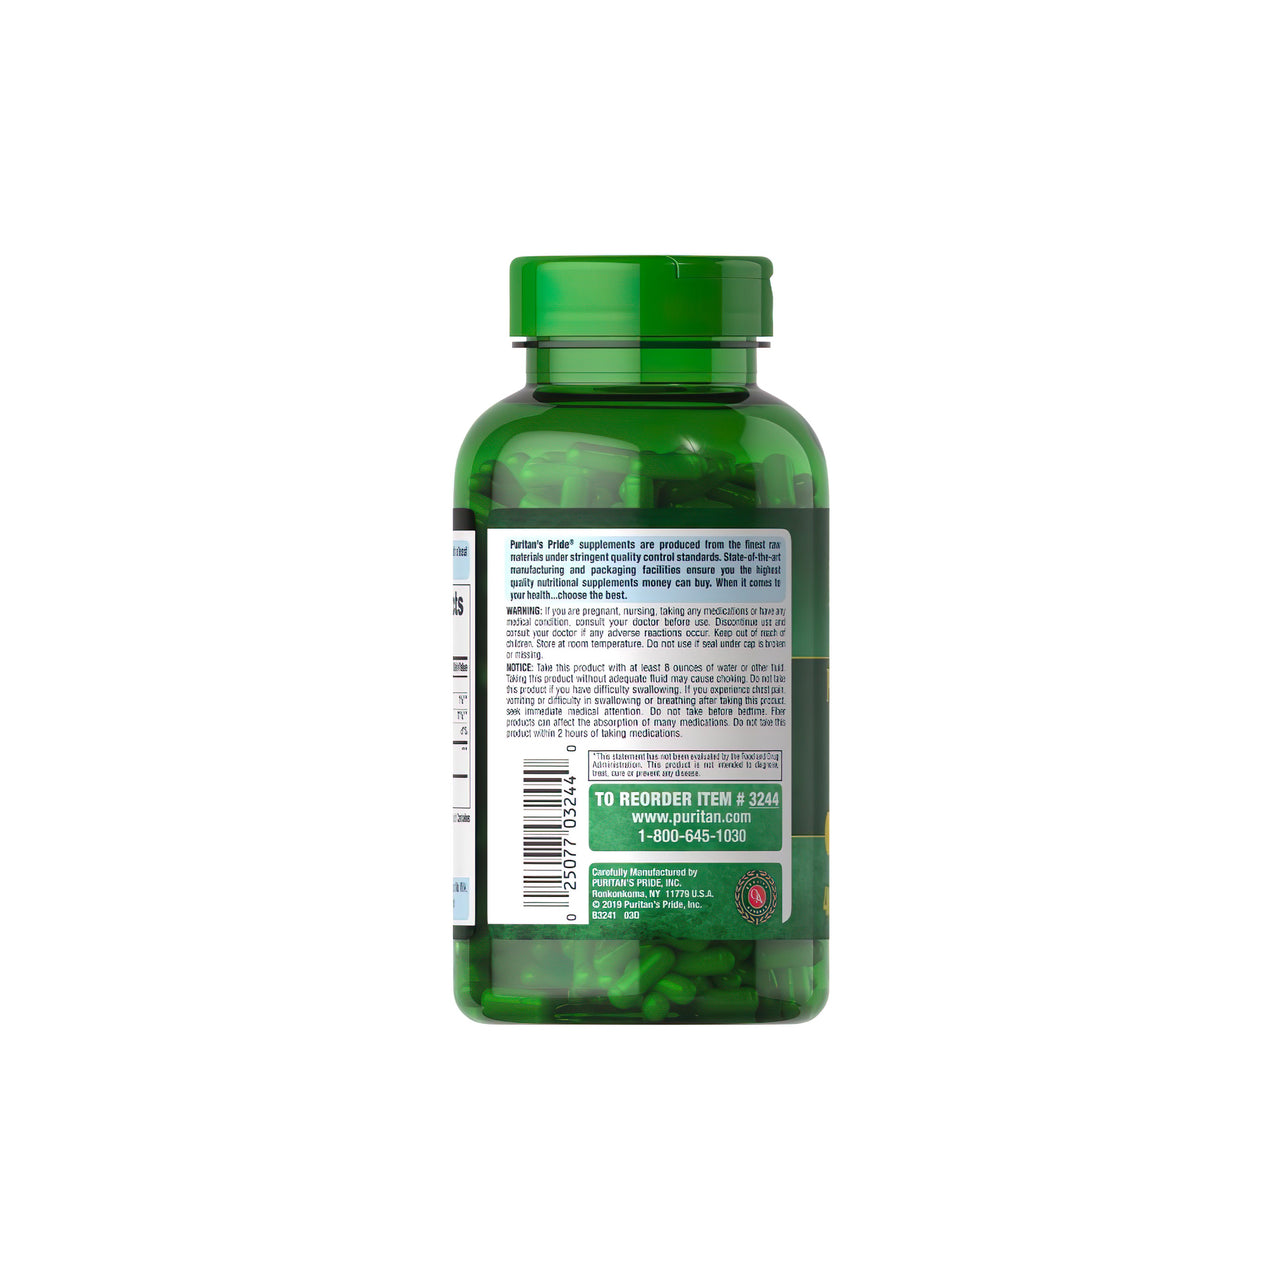 Une bouteille de Psyllium Husks 500 mg 400 Rapid Release Capsules par Puritan's Pride avec des avantages pour la santé digestive et du côlon sur un fond blanc.